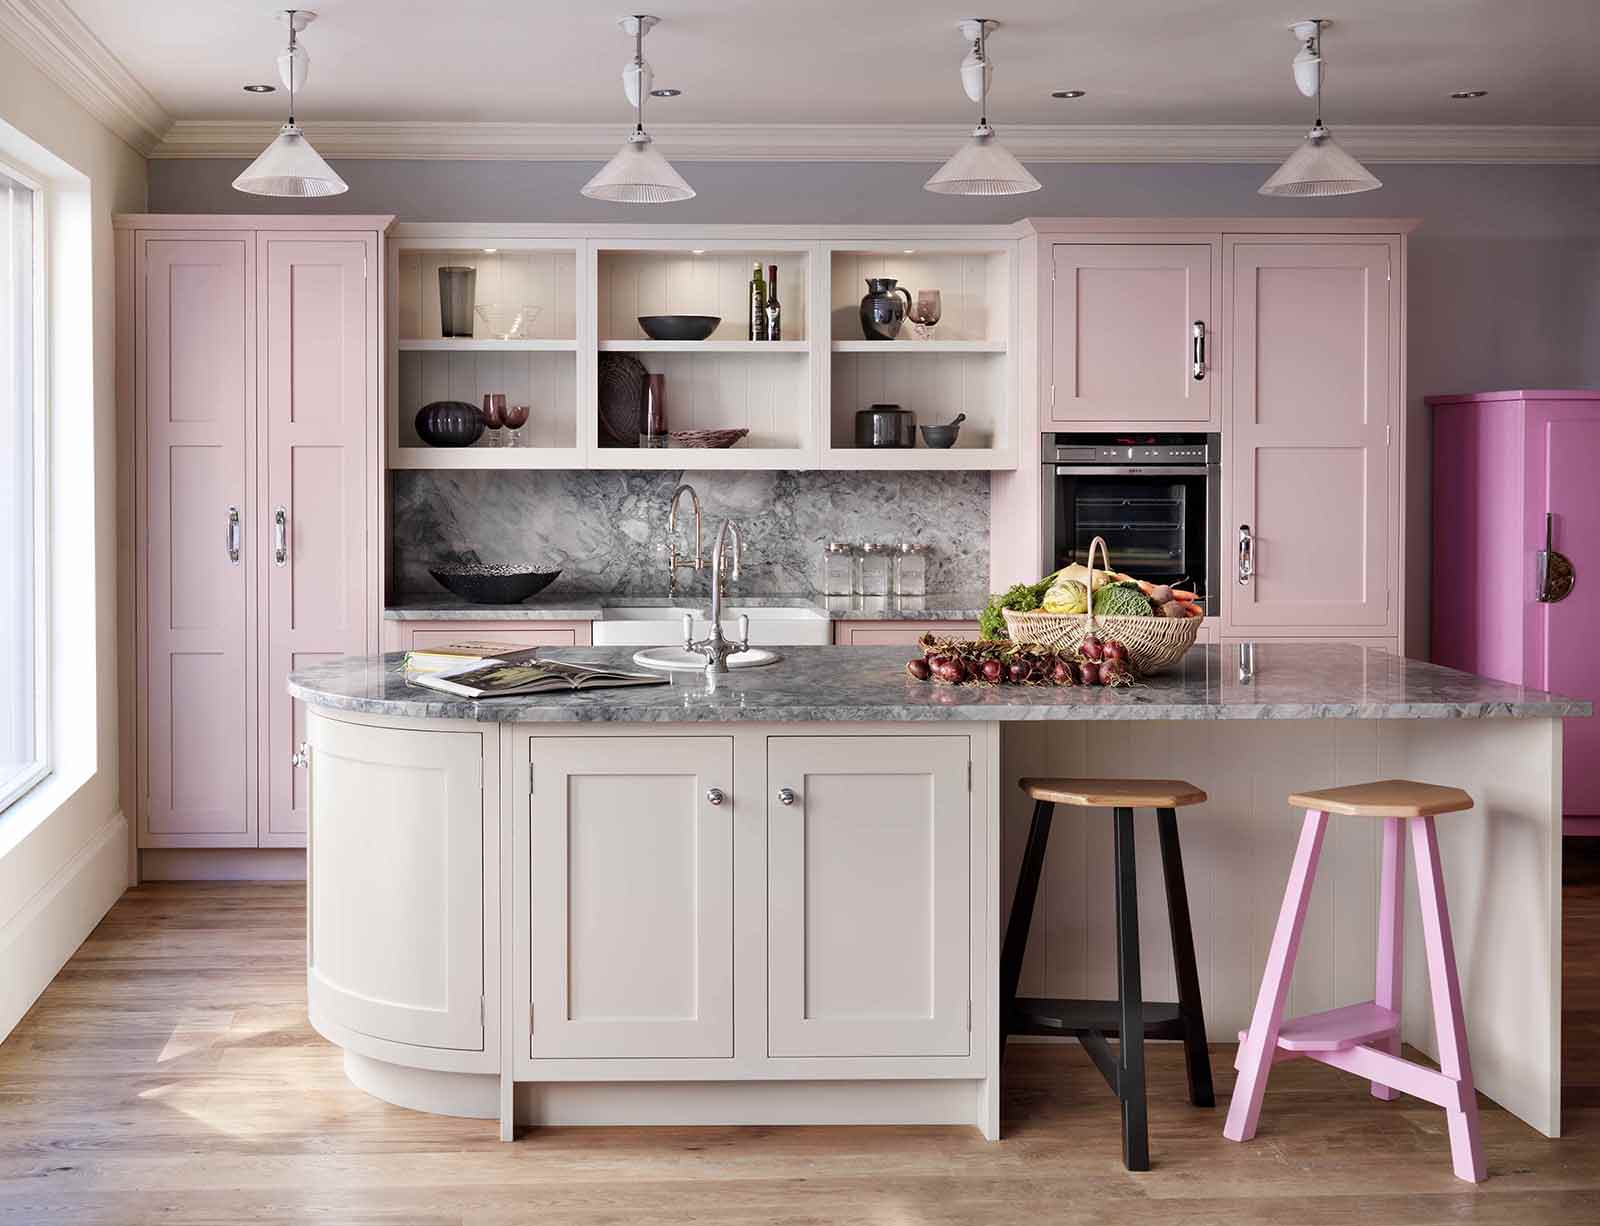 Пастельный розовый, белый, бежевый и черный цвета в интерьере кухни